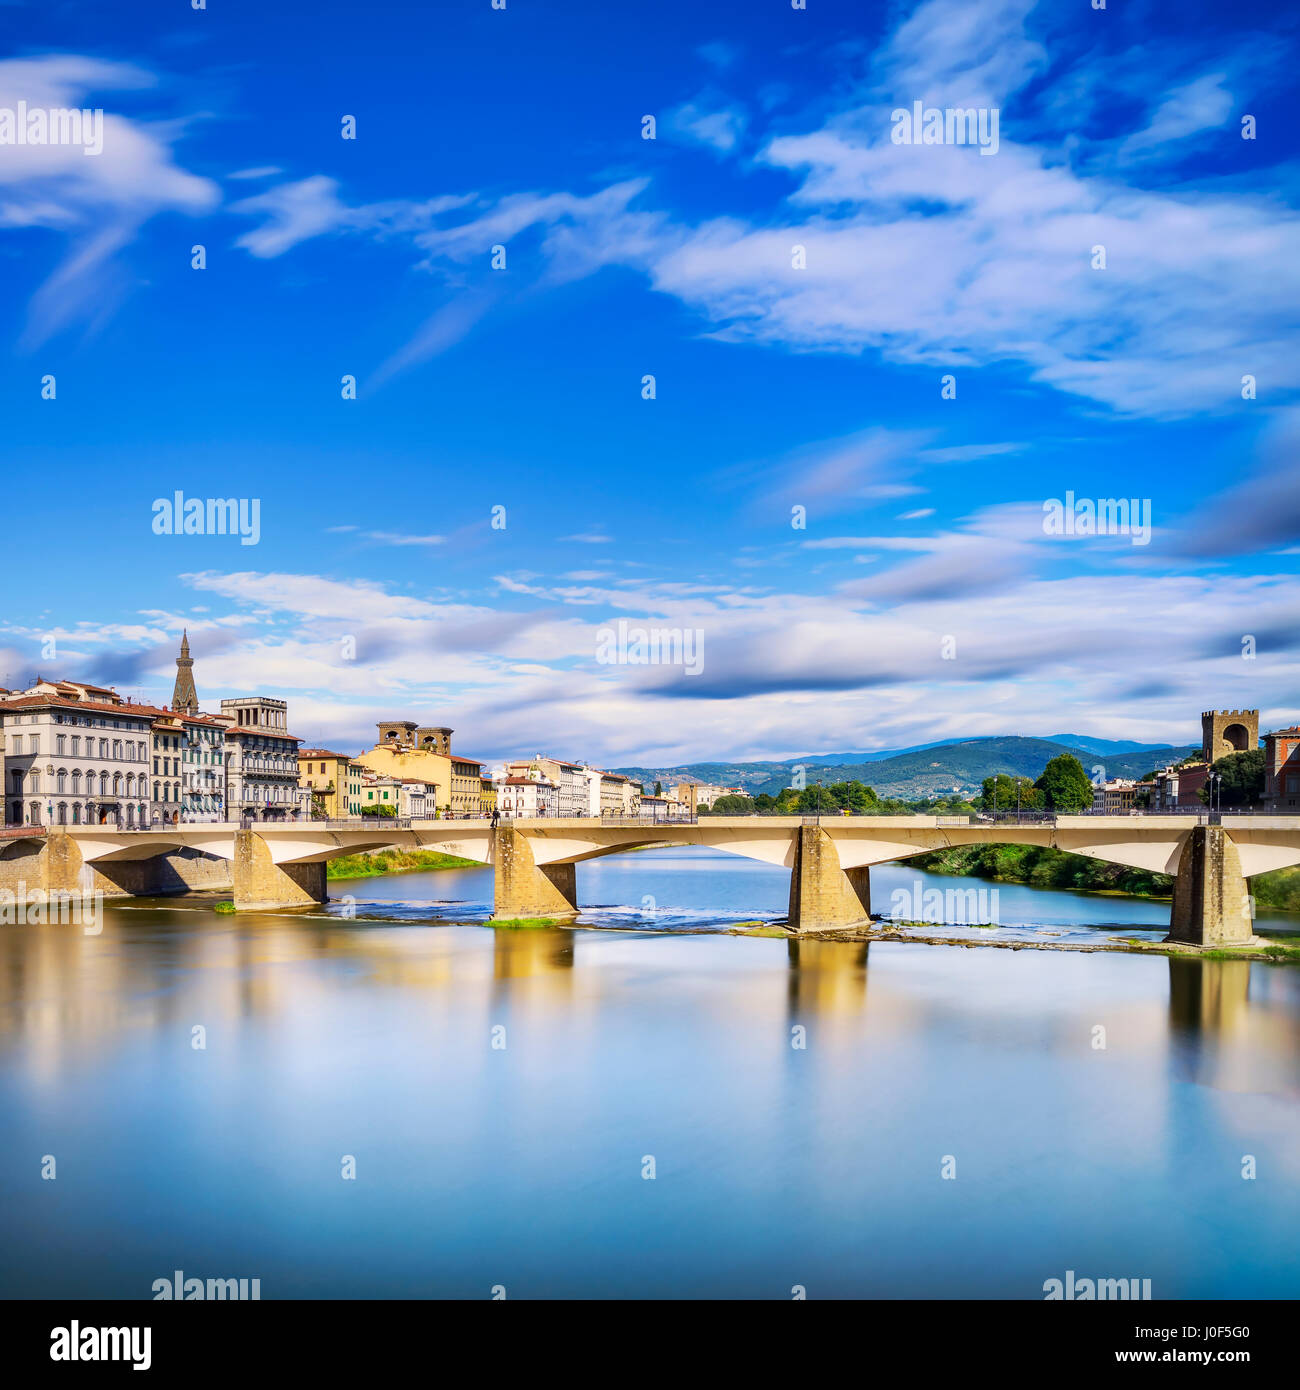 Florenz oder Firenze, Ponte Alle Grazie Brücke Wahrzeichen am Fluss Arno, Sonnenuntergang Landschaft mit Reflexion. Toskana, Italien. Langzeitbelichtung. Stockfoto